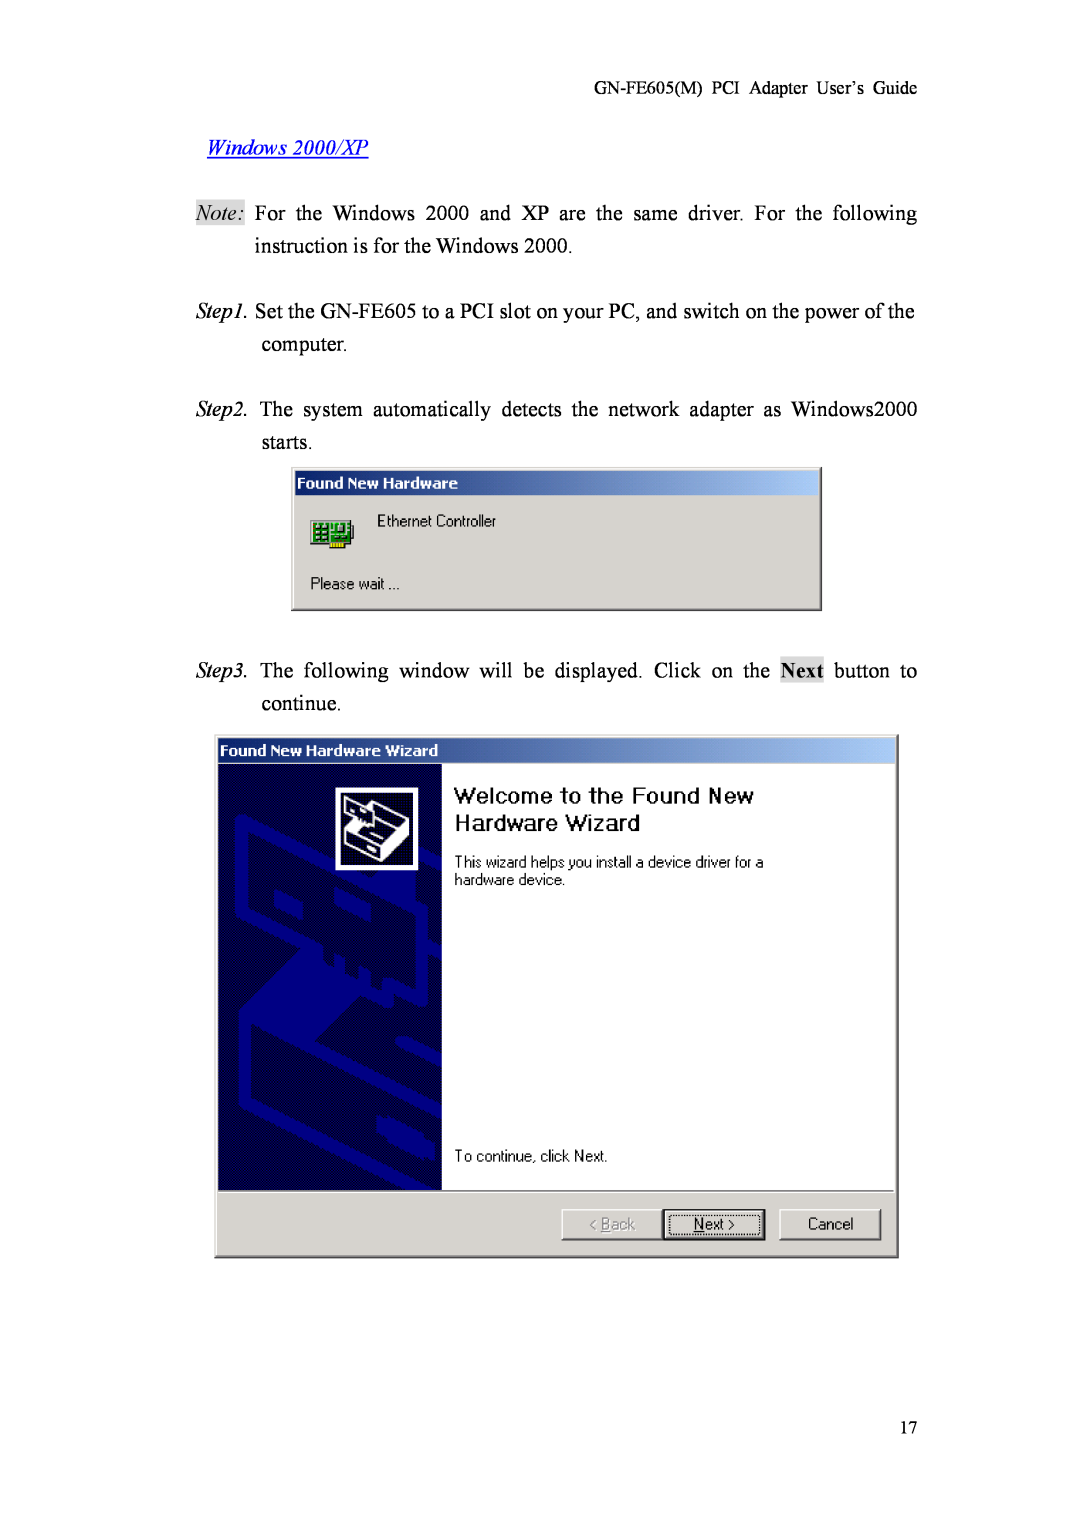 Gigabyte GN-FE605(M) manual Windows 2000/XP 